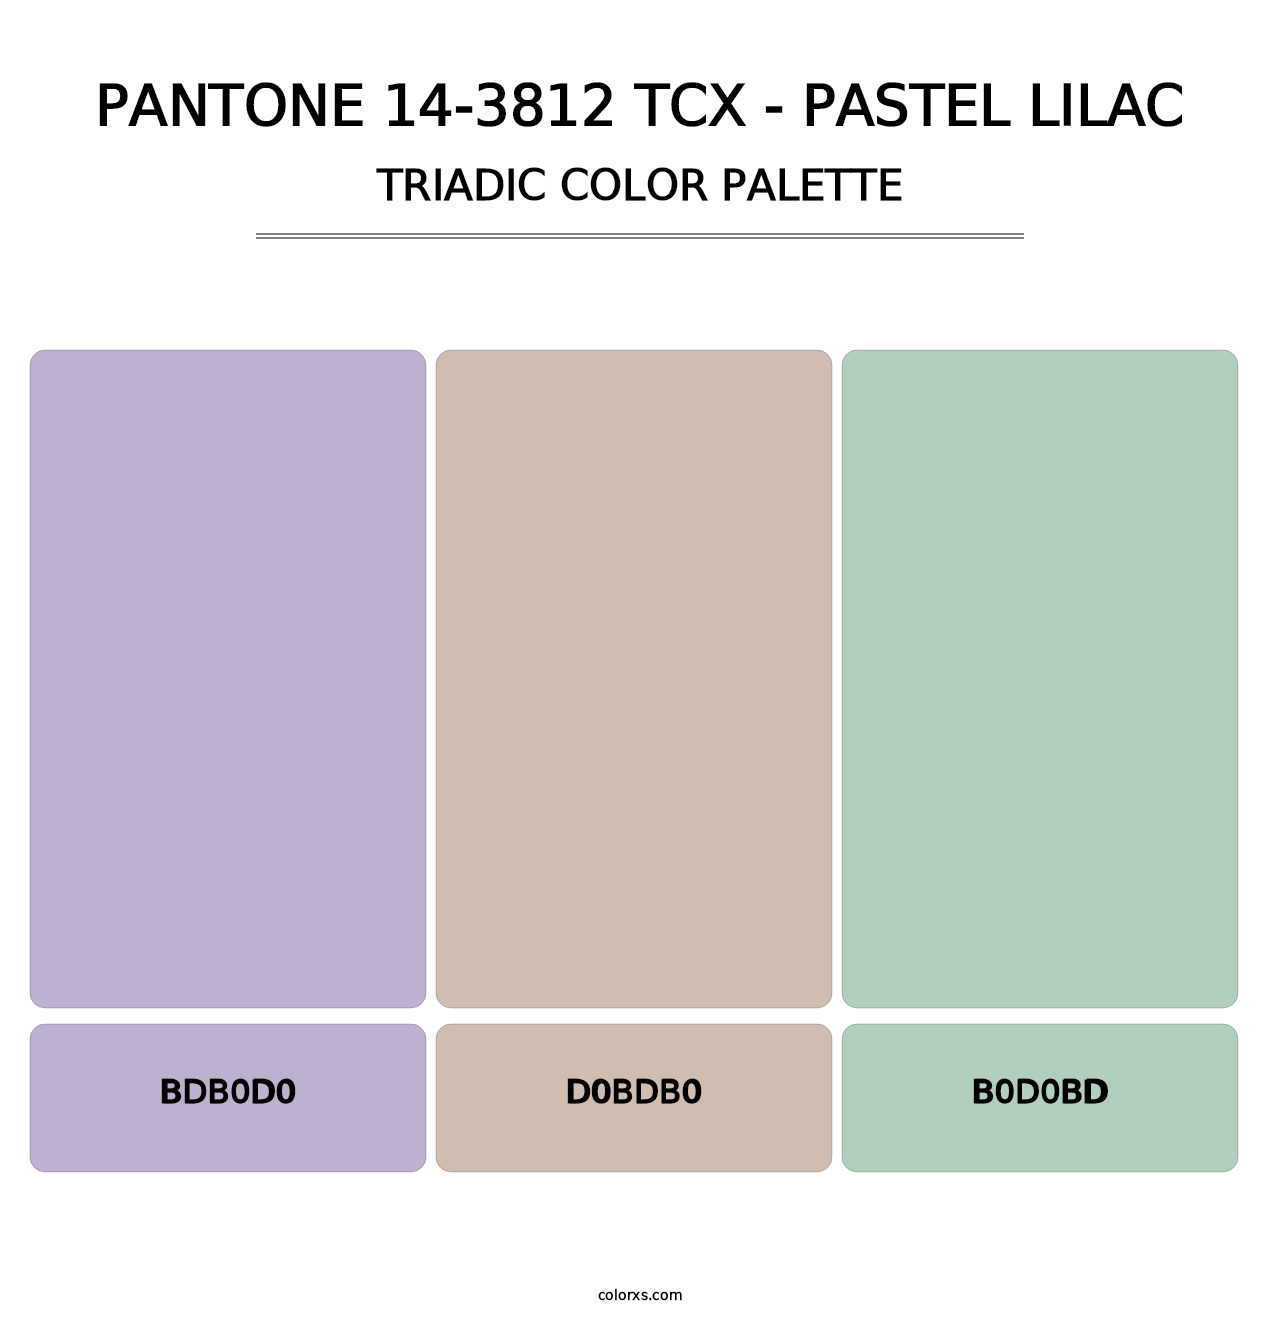 PANTONE 14-3812 TCX - Pastel Lilac - Triadic Color Palette